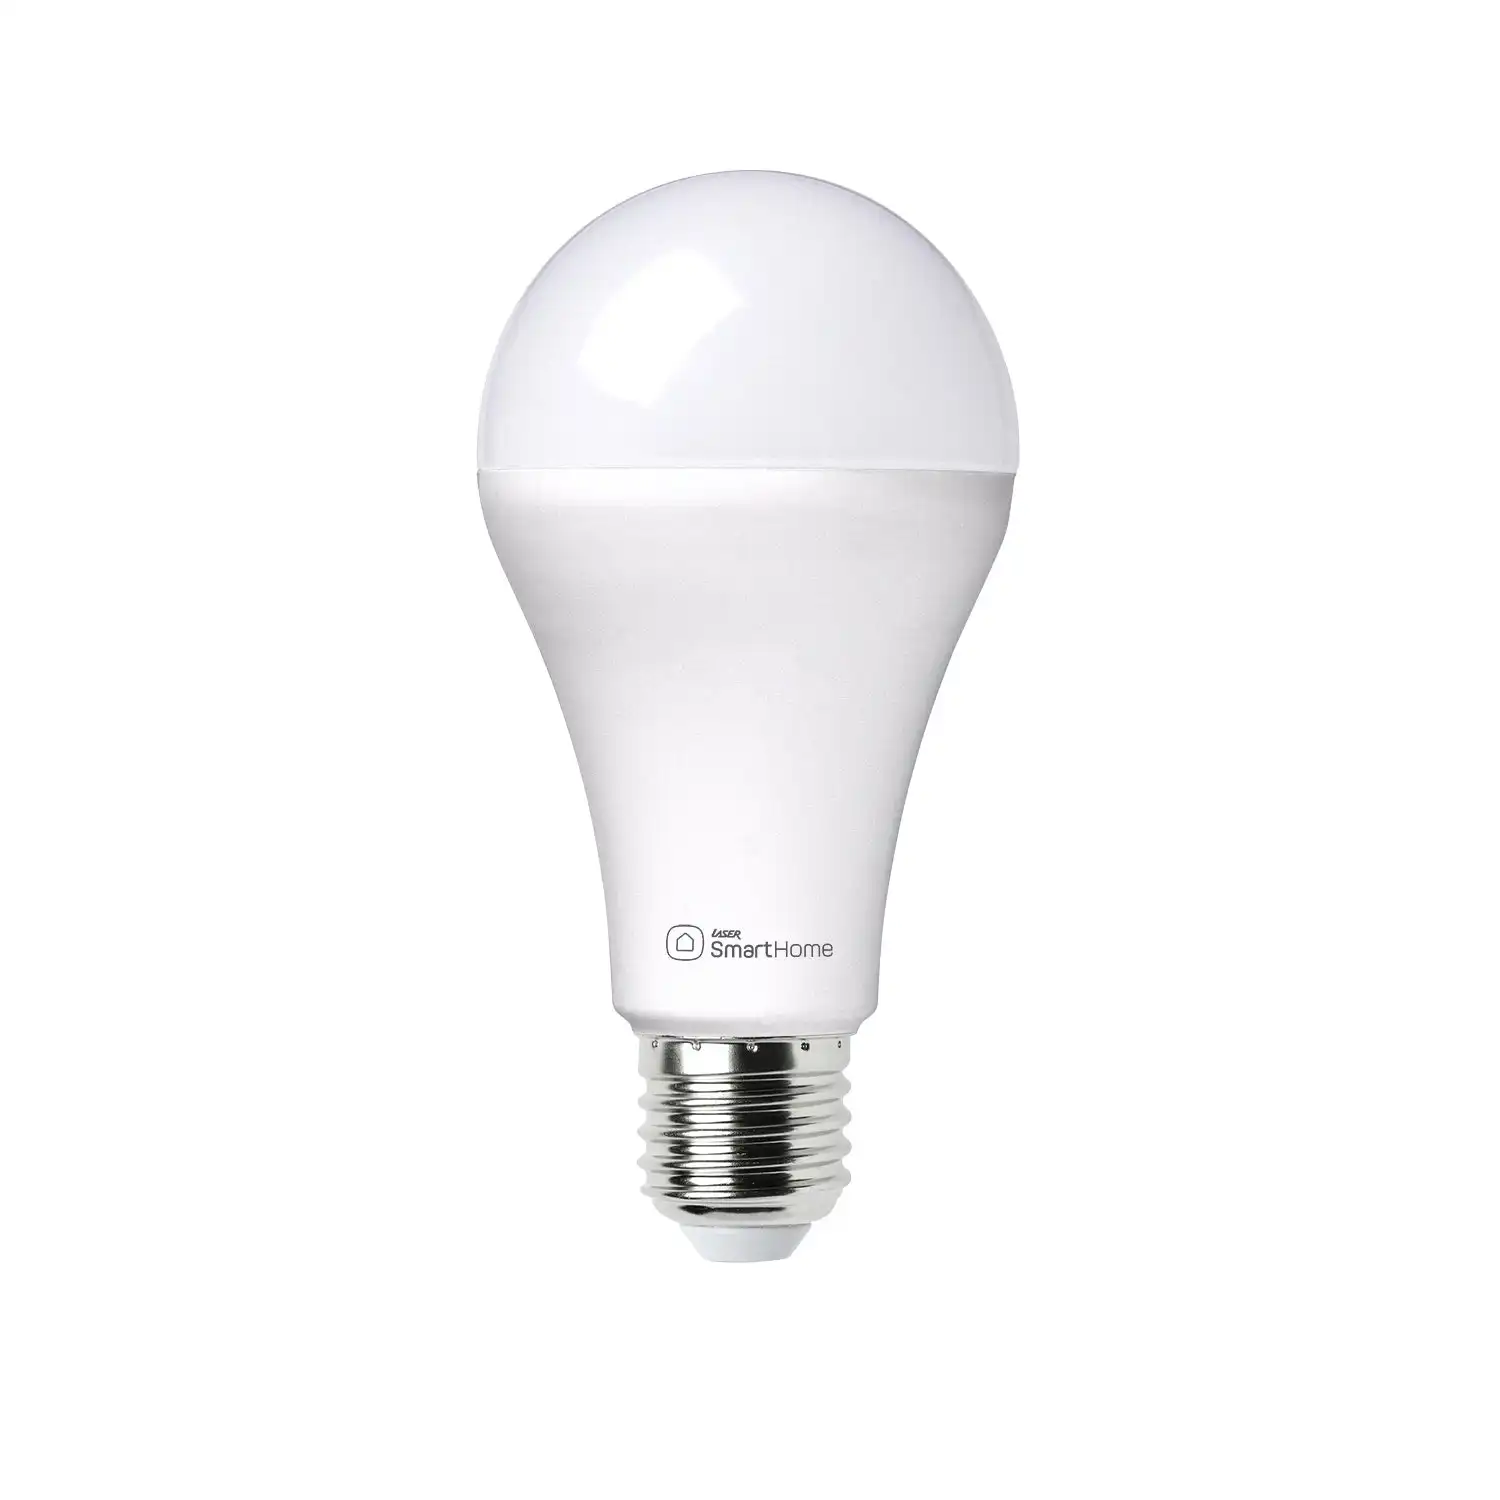 WIFI Smart White Dimmable LED Bulb E27 Google Home Alexa Compatible 240V